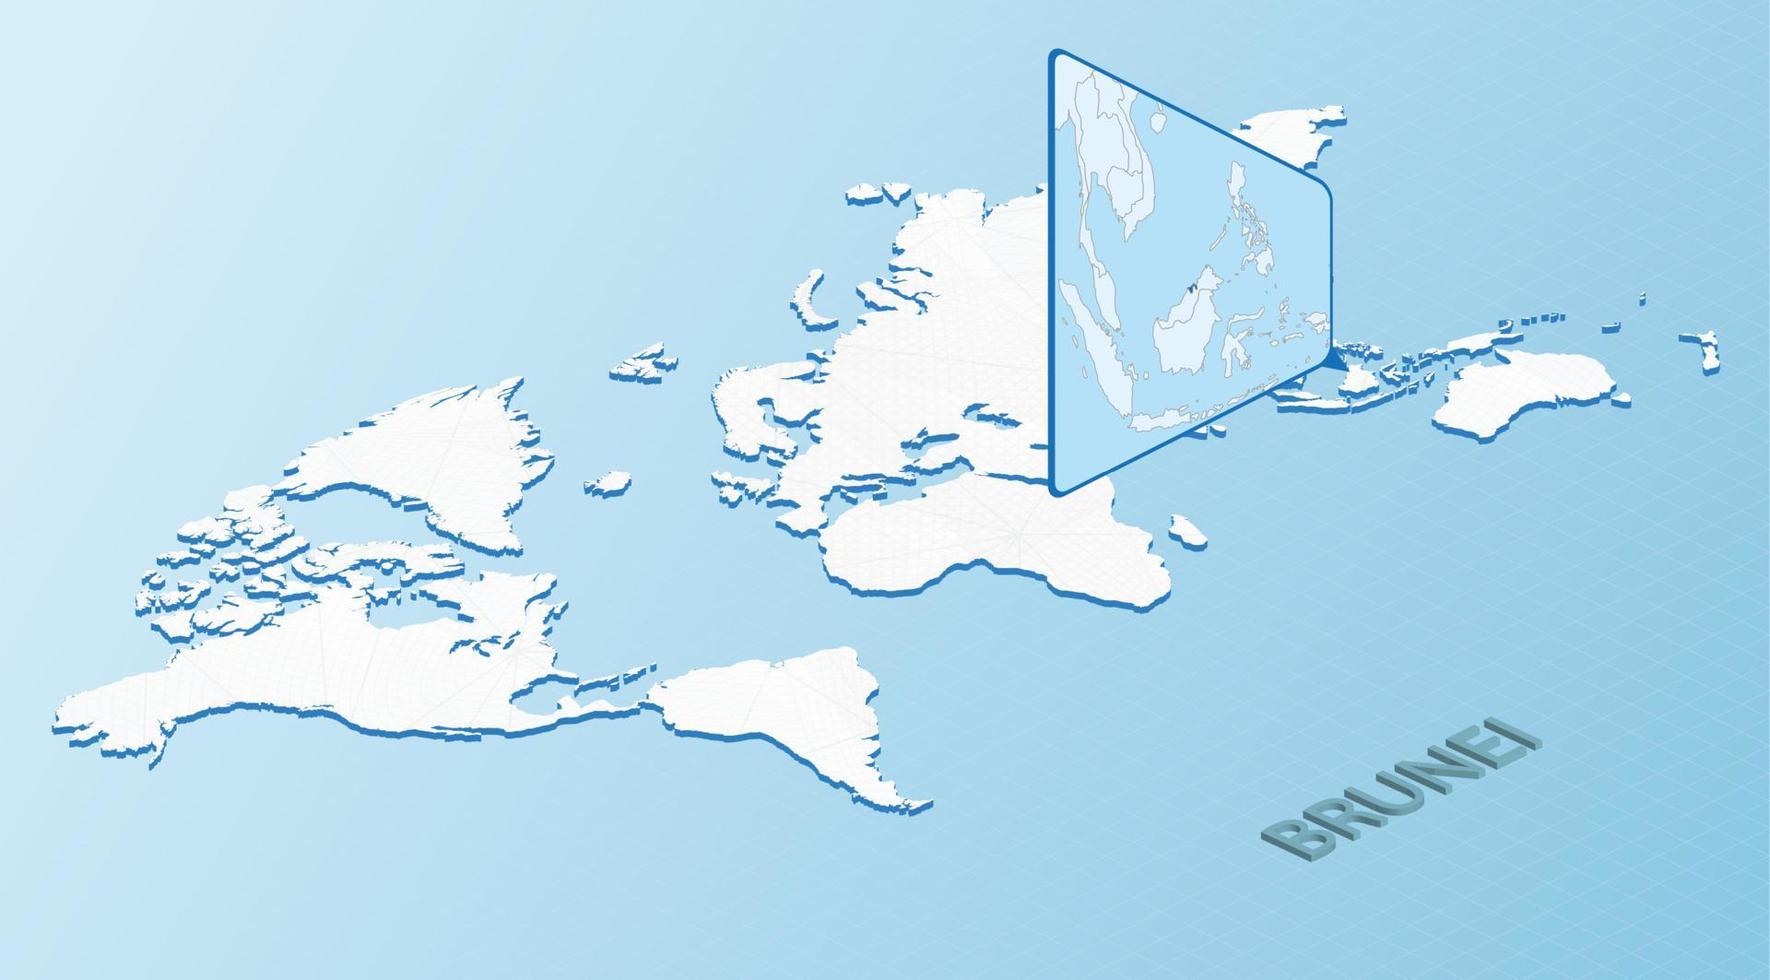 mondo carta geografica nel isometrico stile con dettagliato carta geografica di brunei. leggero blu brunei carta geografica con astratto mondo carta geografica. vettore